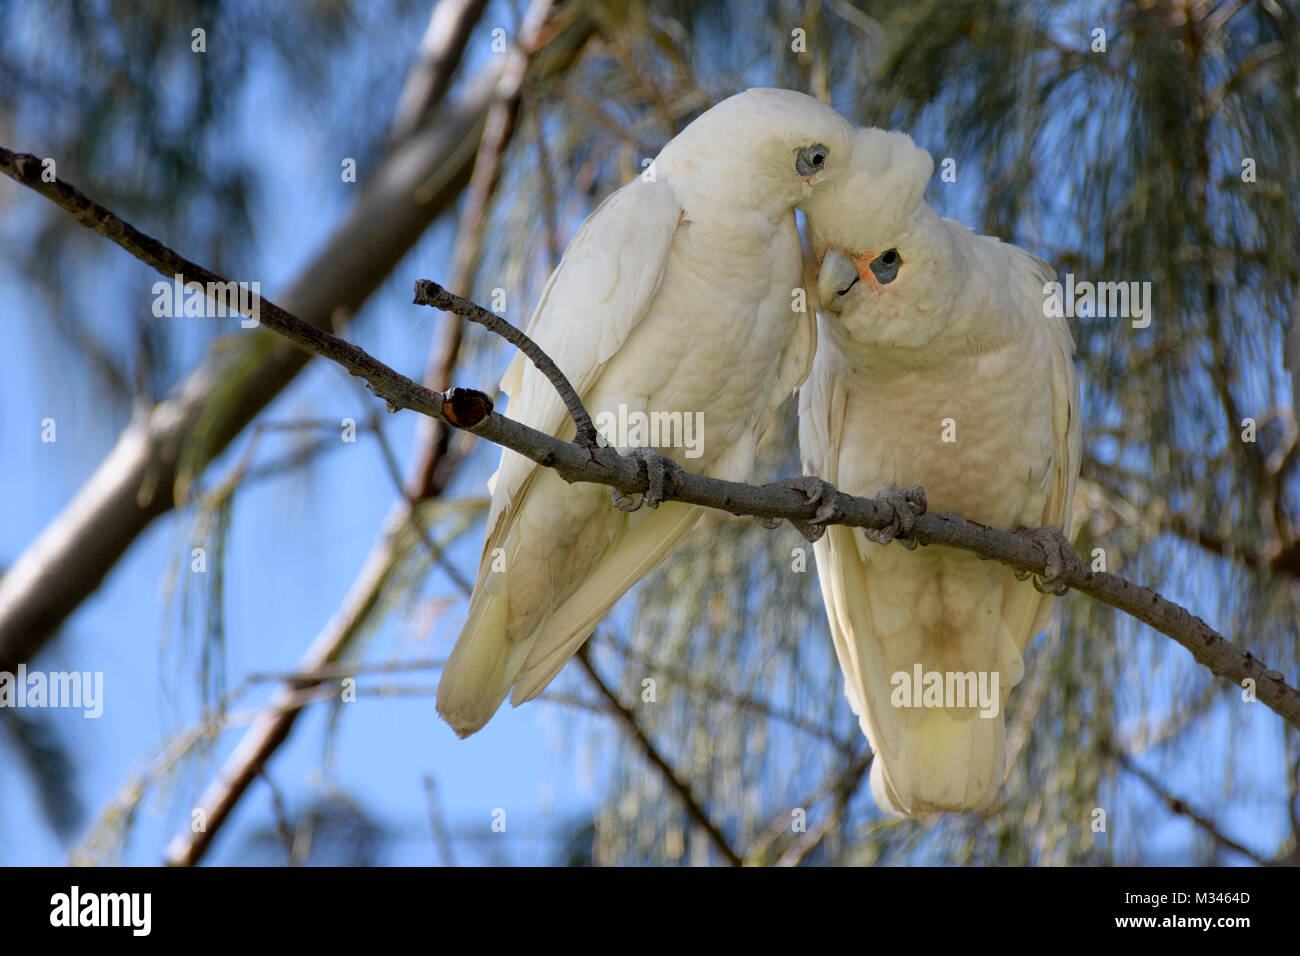 Two Corellas perched on a branch, Perth, Western Australia, Australia Stock Photo